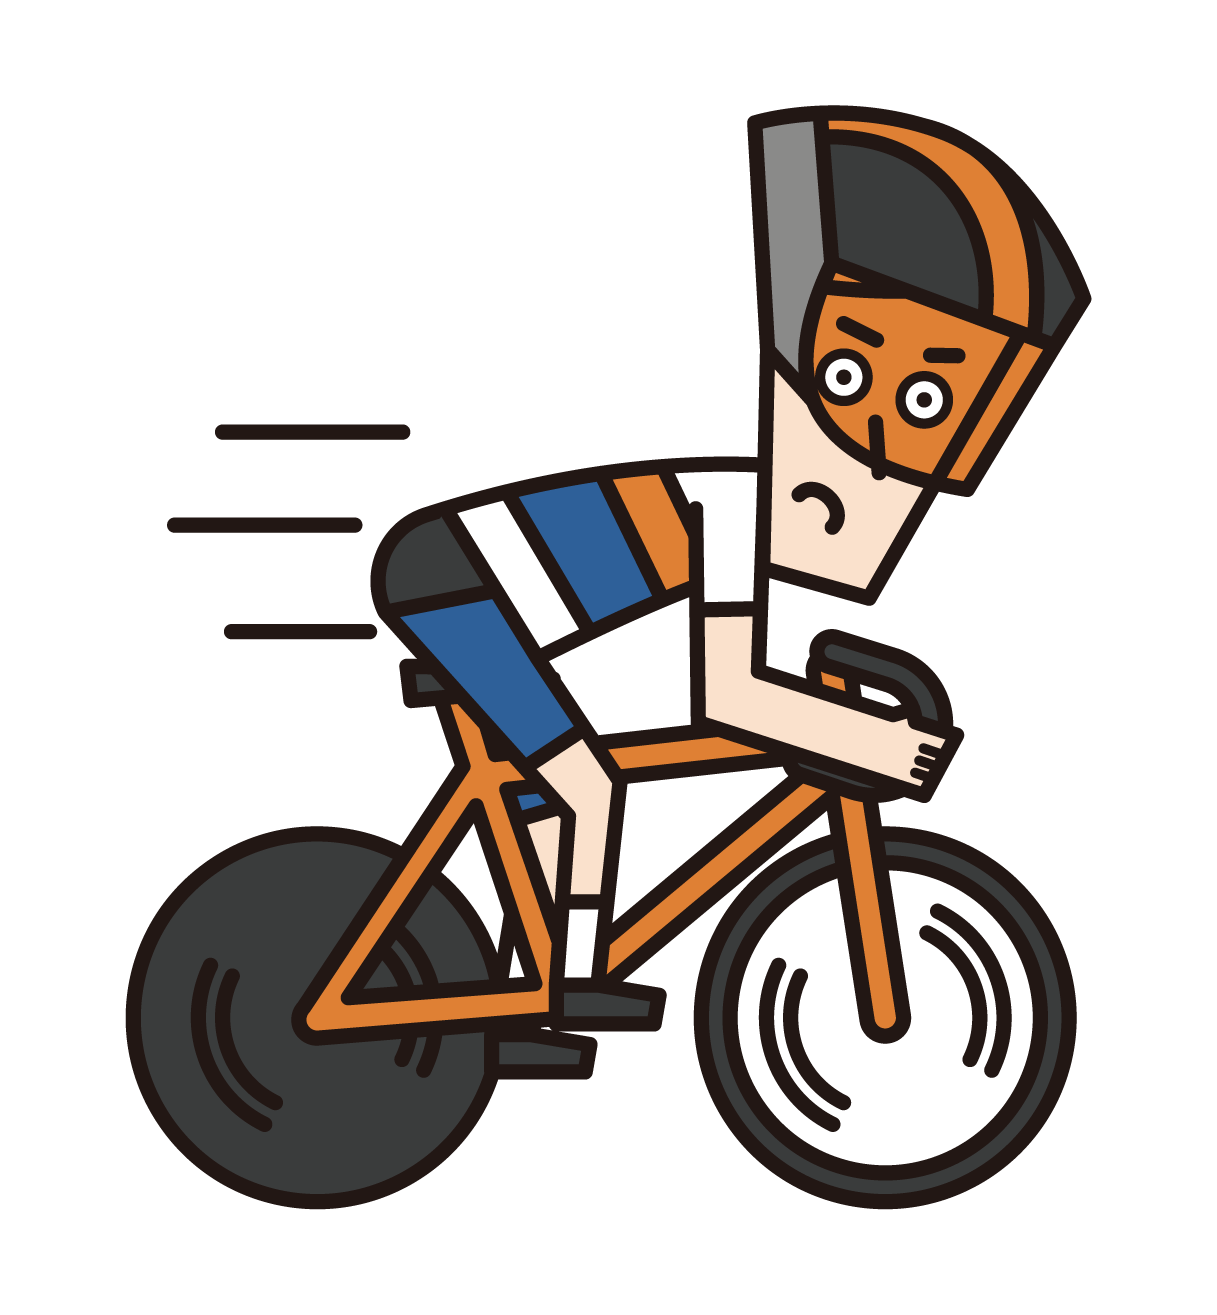 競走するスプリンター（自転車トラック競技の男性選手）のイラスト